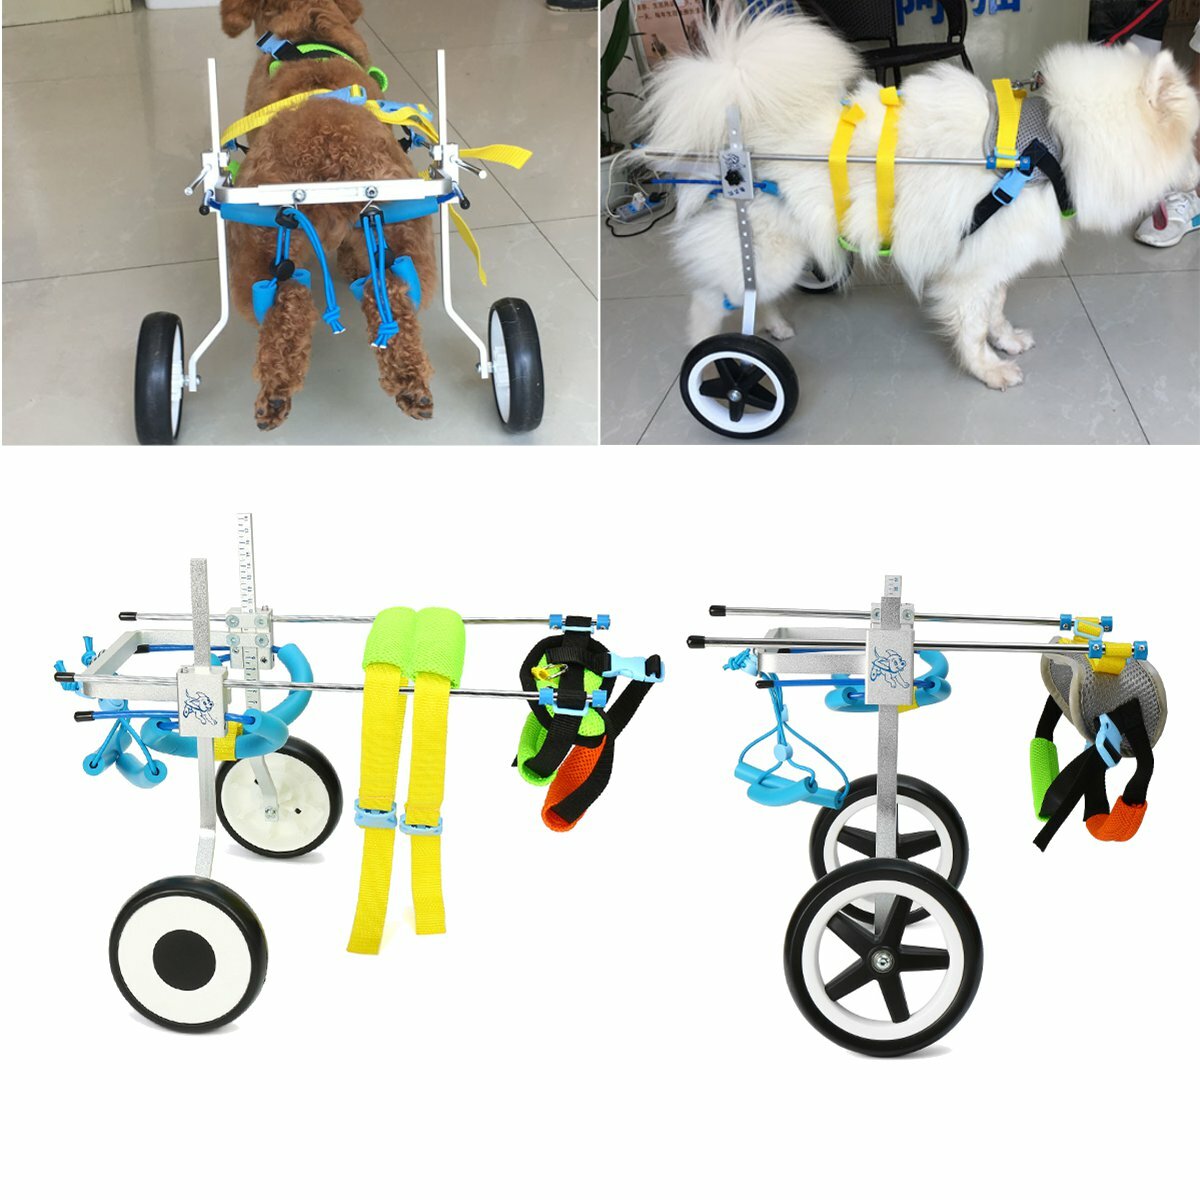 

Pet Собака Кресло-коляска для инвалидов, маленькое Кот Складное кресло для бега на скутере, тележка для щенков с паралич